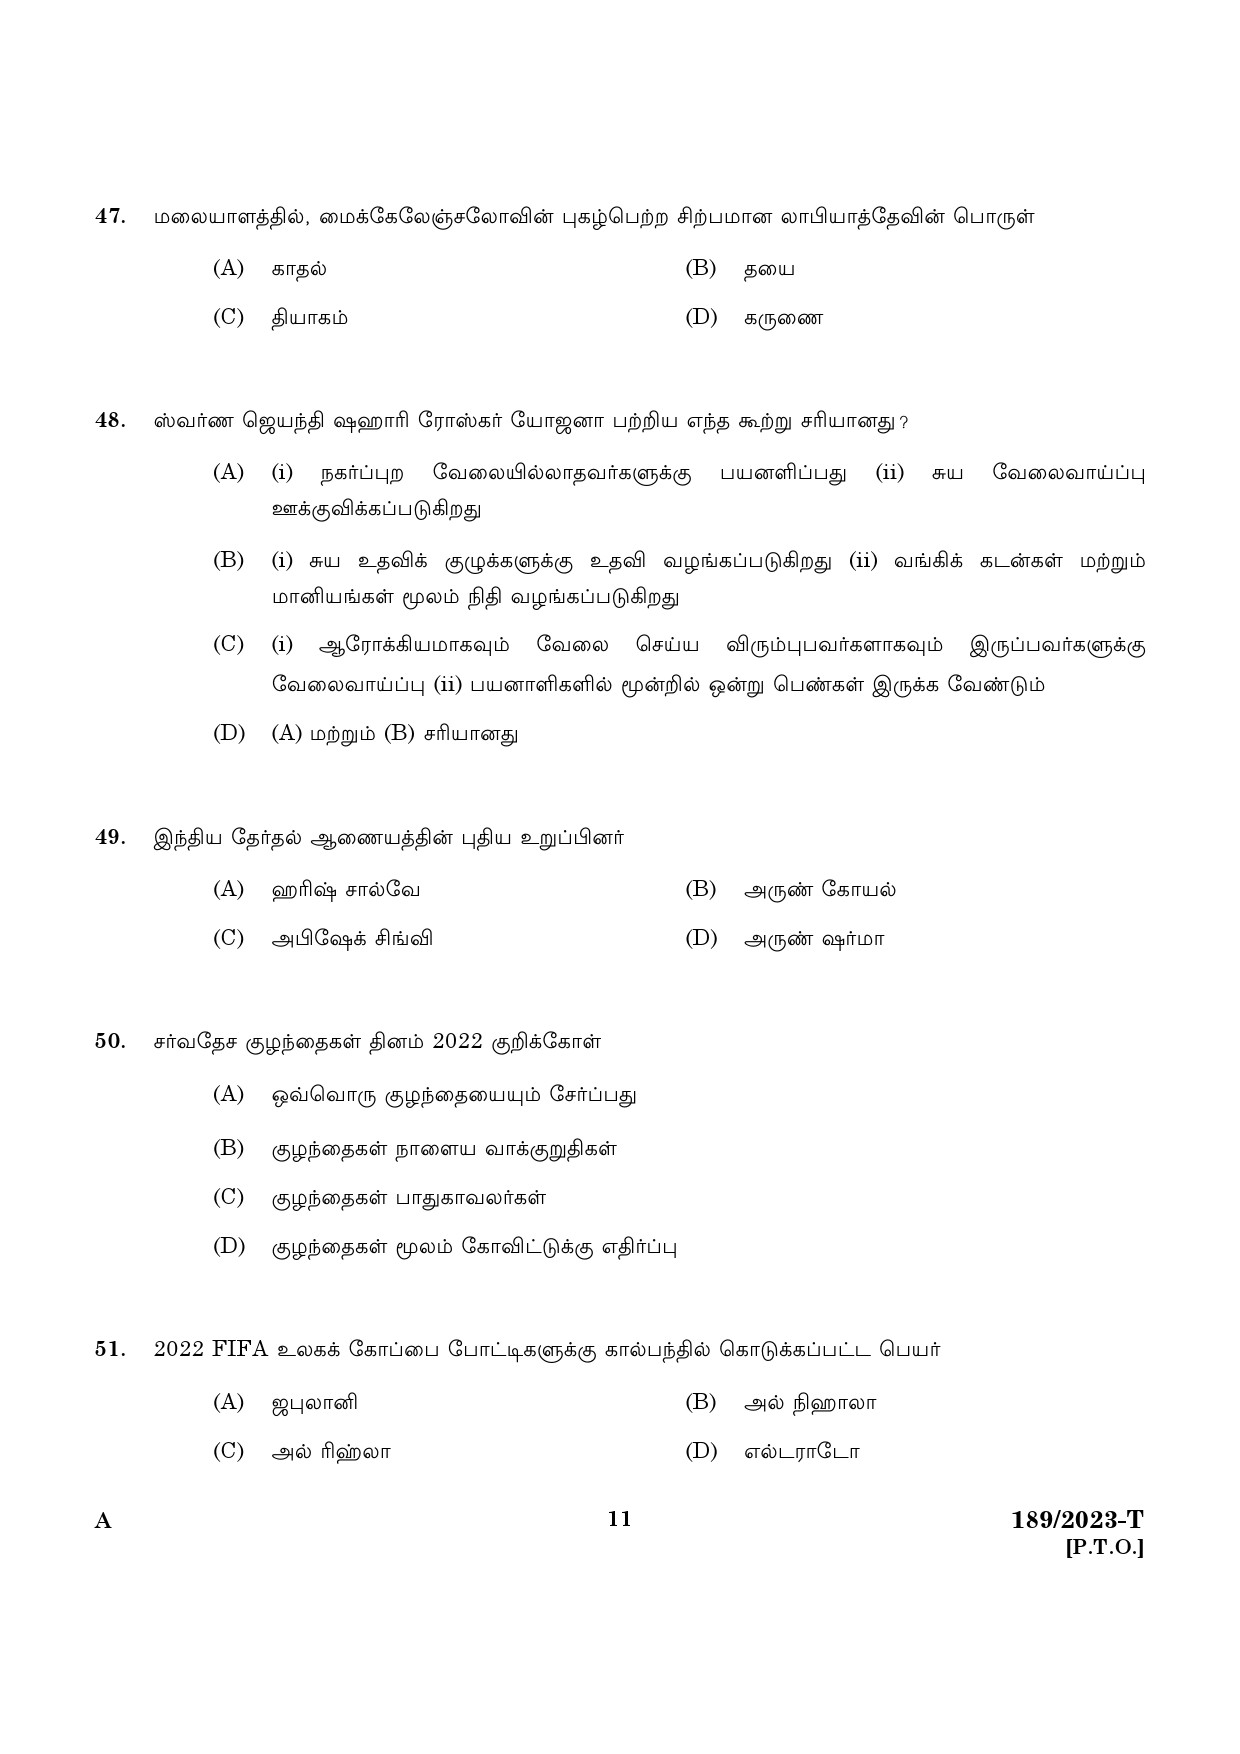 KPSC LGS Tamil Exam 2023 Code 1892023 T 9